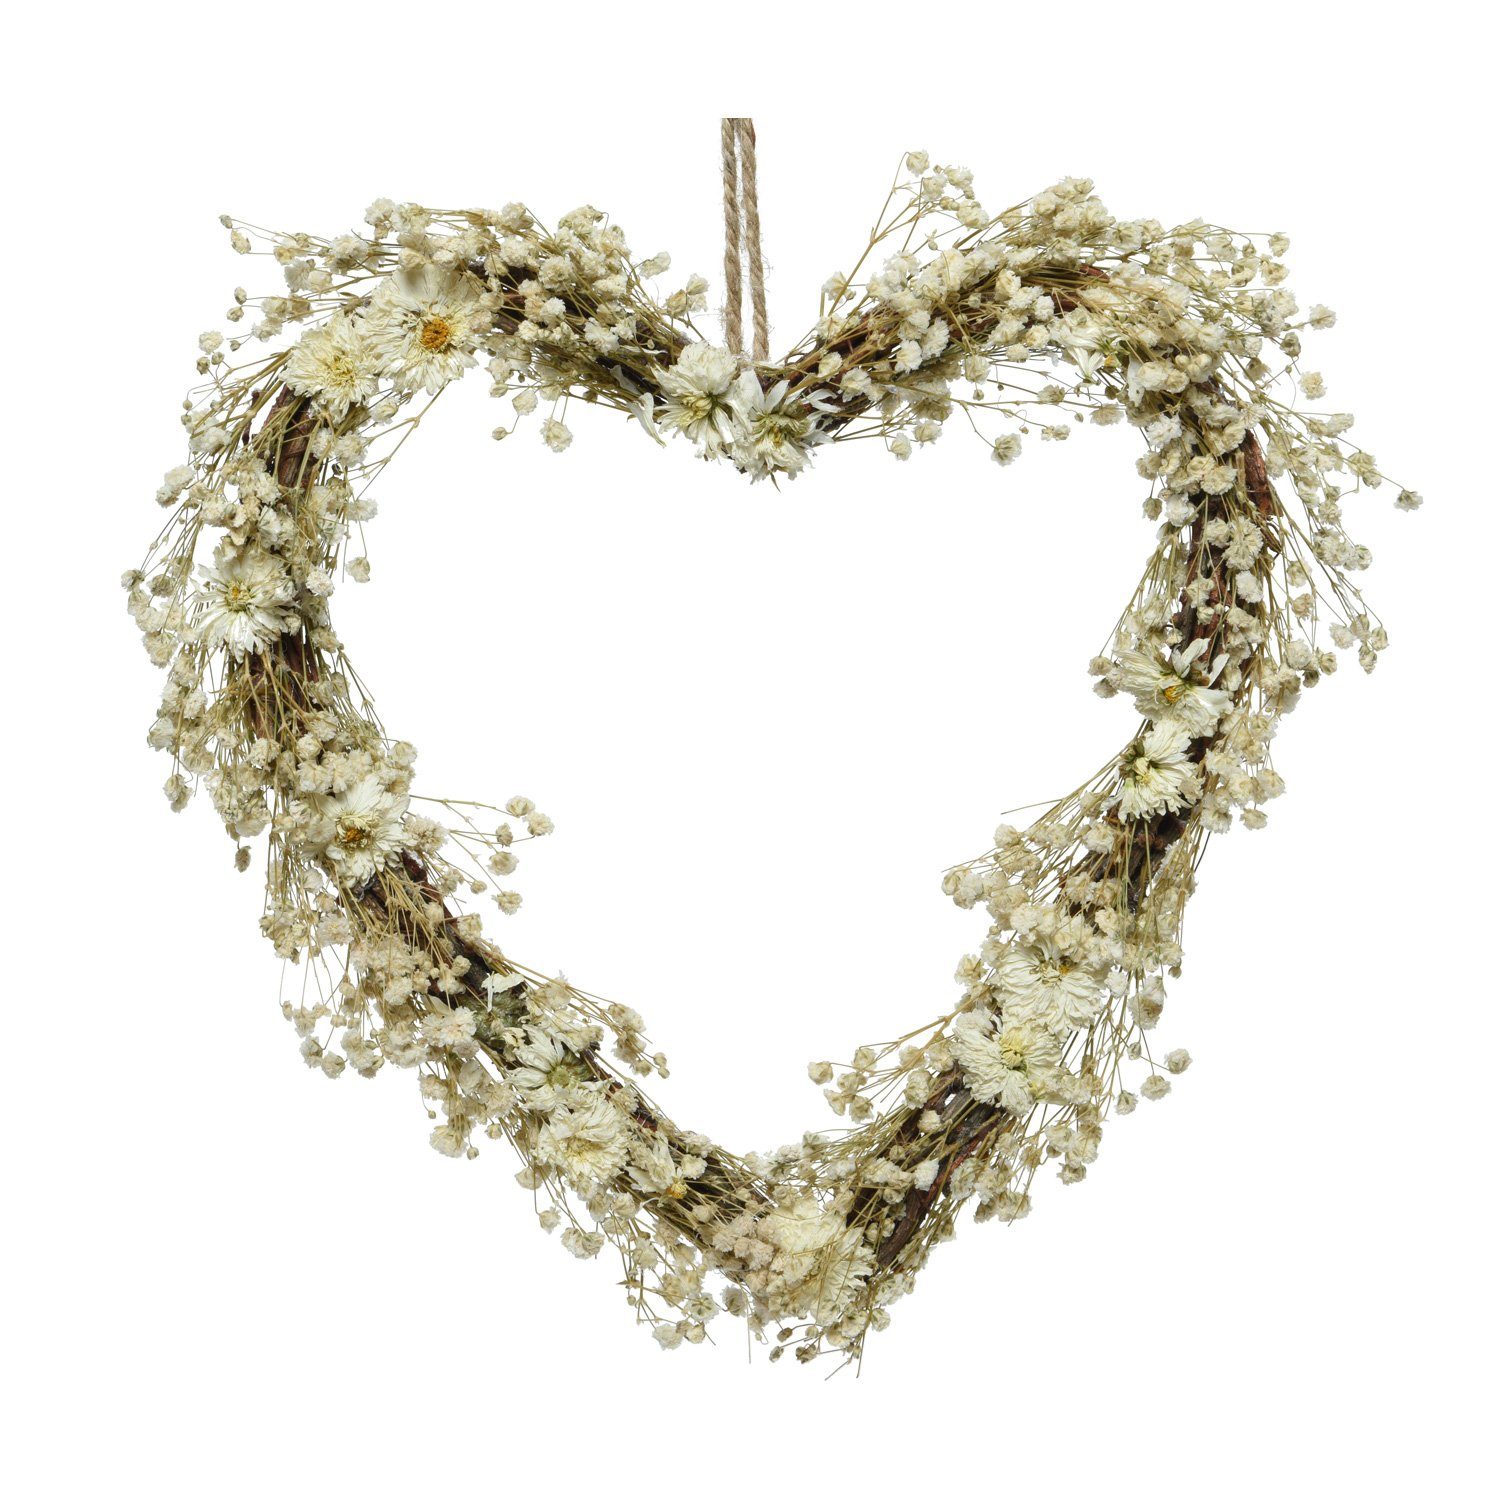 MARELIDA Dekokranz aus Trockenblumen in Herzform Wandkranz Türkranz H: 26cm f.Innen creme